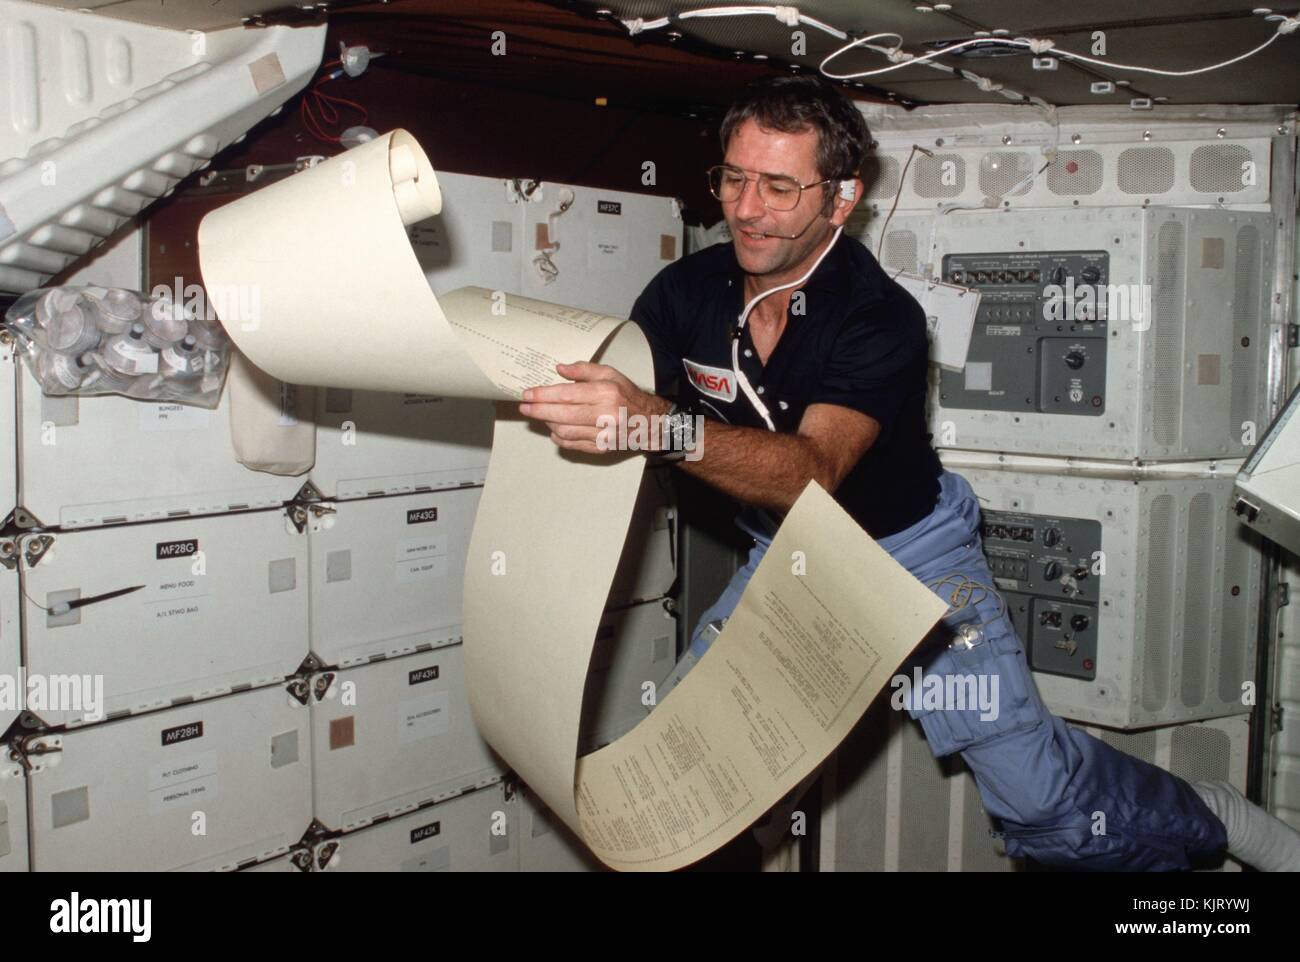 Sts-2 de la nasa navette spatiale columbia premier astronaute de l'équipage se lit vraiment richard alors que le papier de téléimprimeur flottant dans le compartiment intermédiaire de la navette, le 14 novembre 1981 dans l'orbite de la terre. (Photo par joe h. engle via planetpix) Banque D'Images